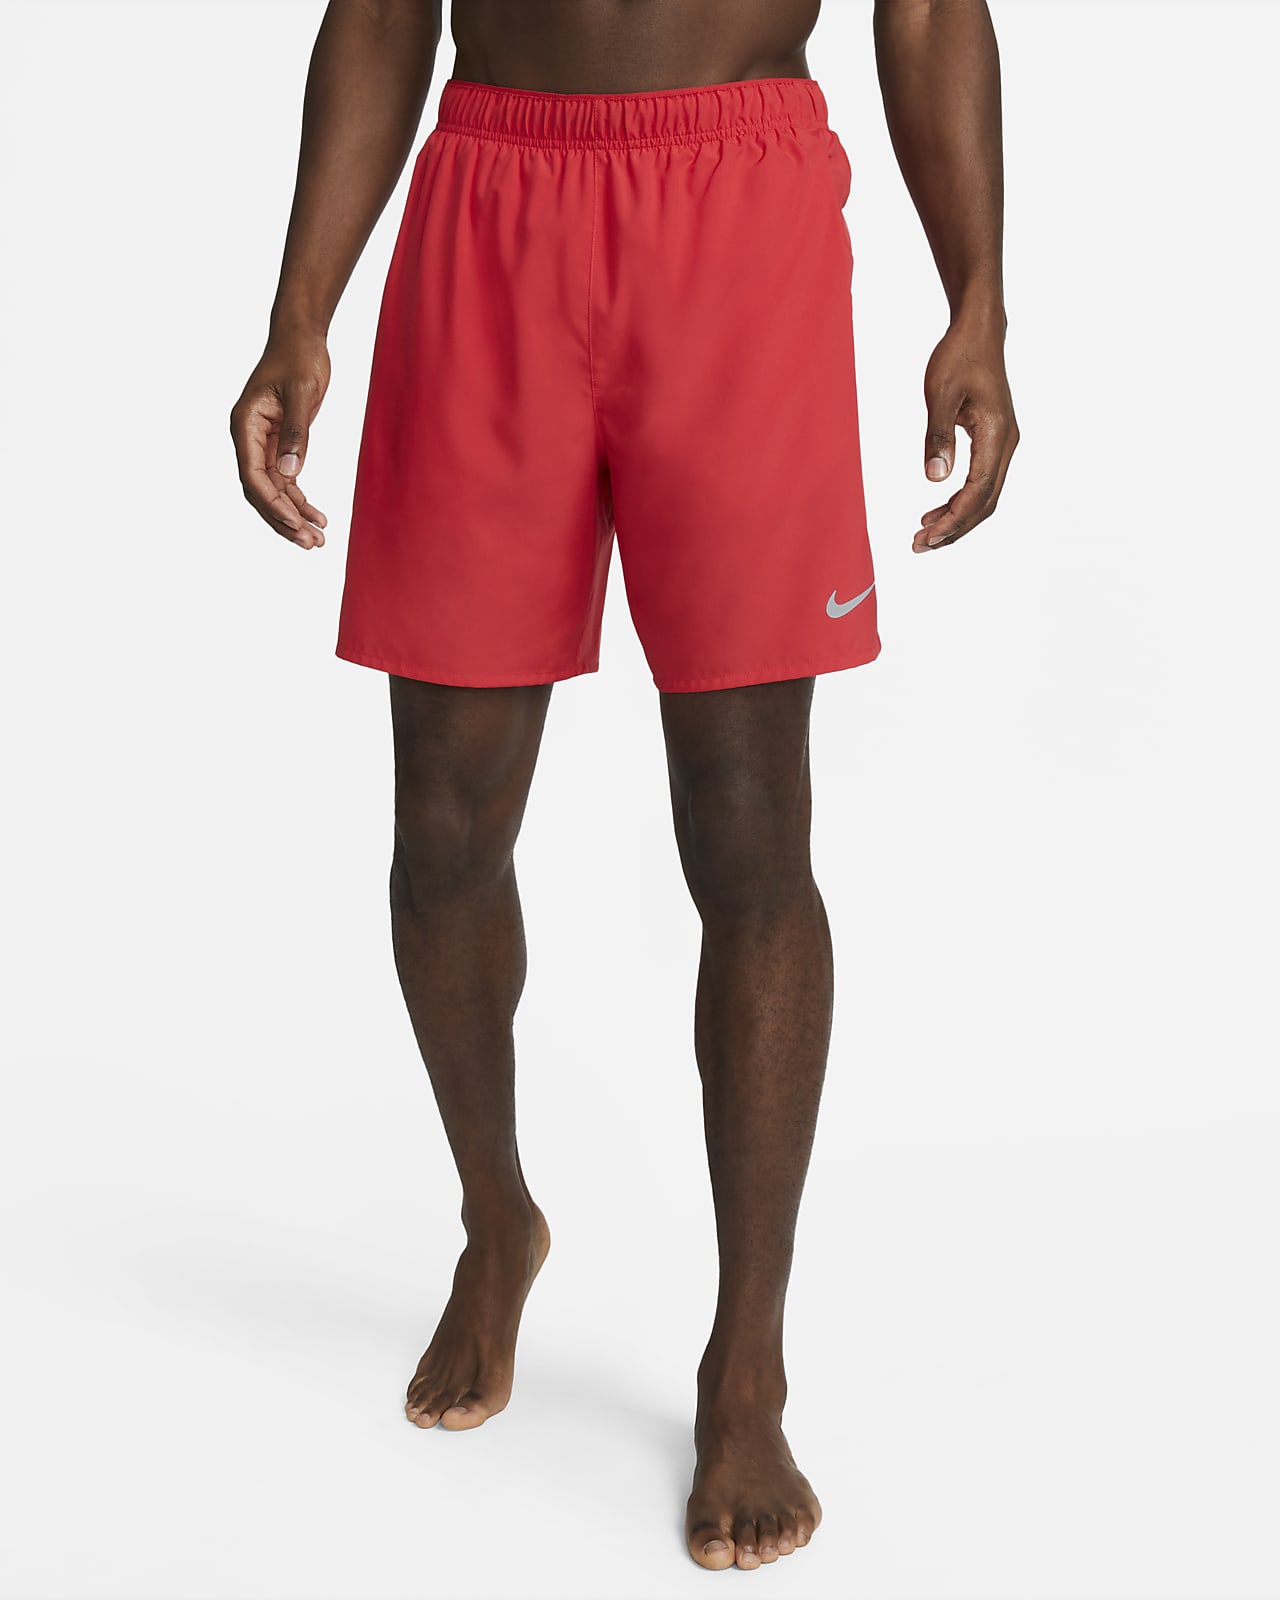 Short de running avec sous-short intégré 18 cm Dri-FIT Nike Challenger pour homme